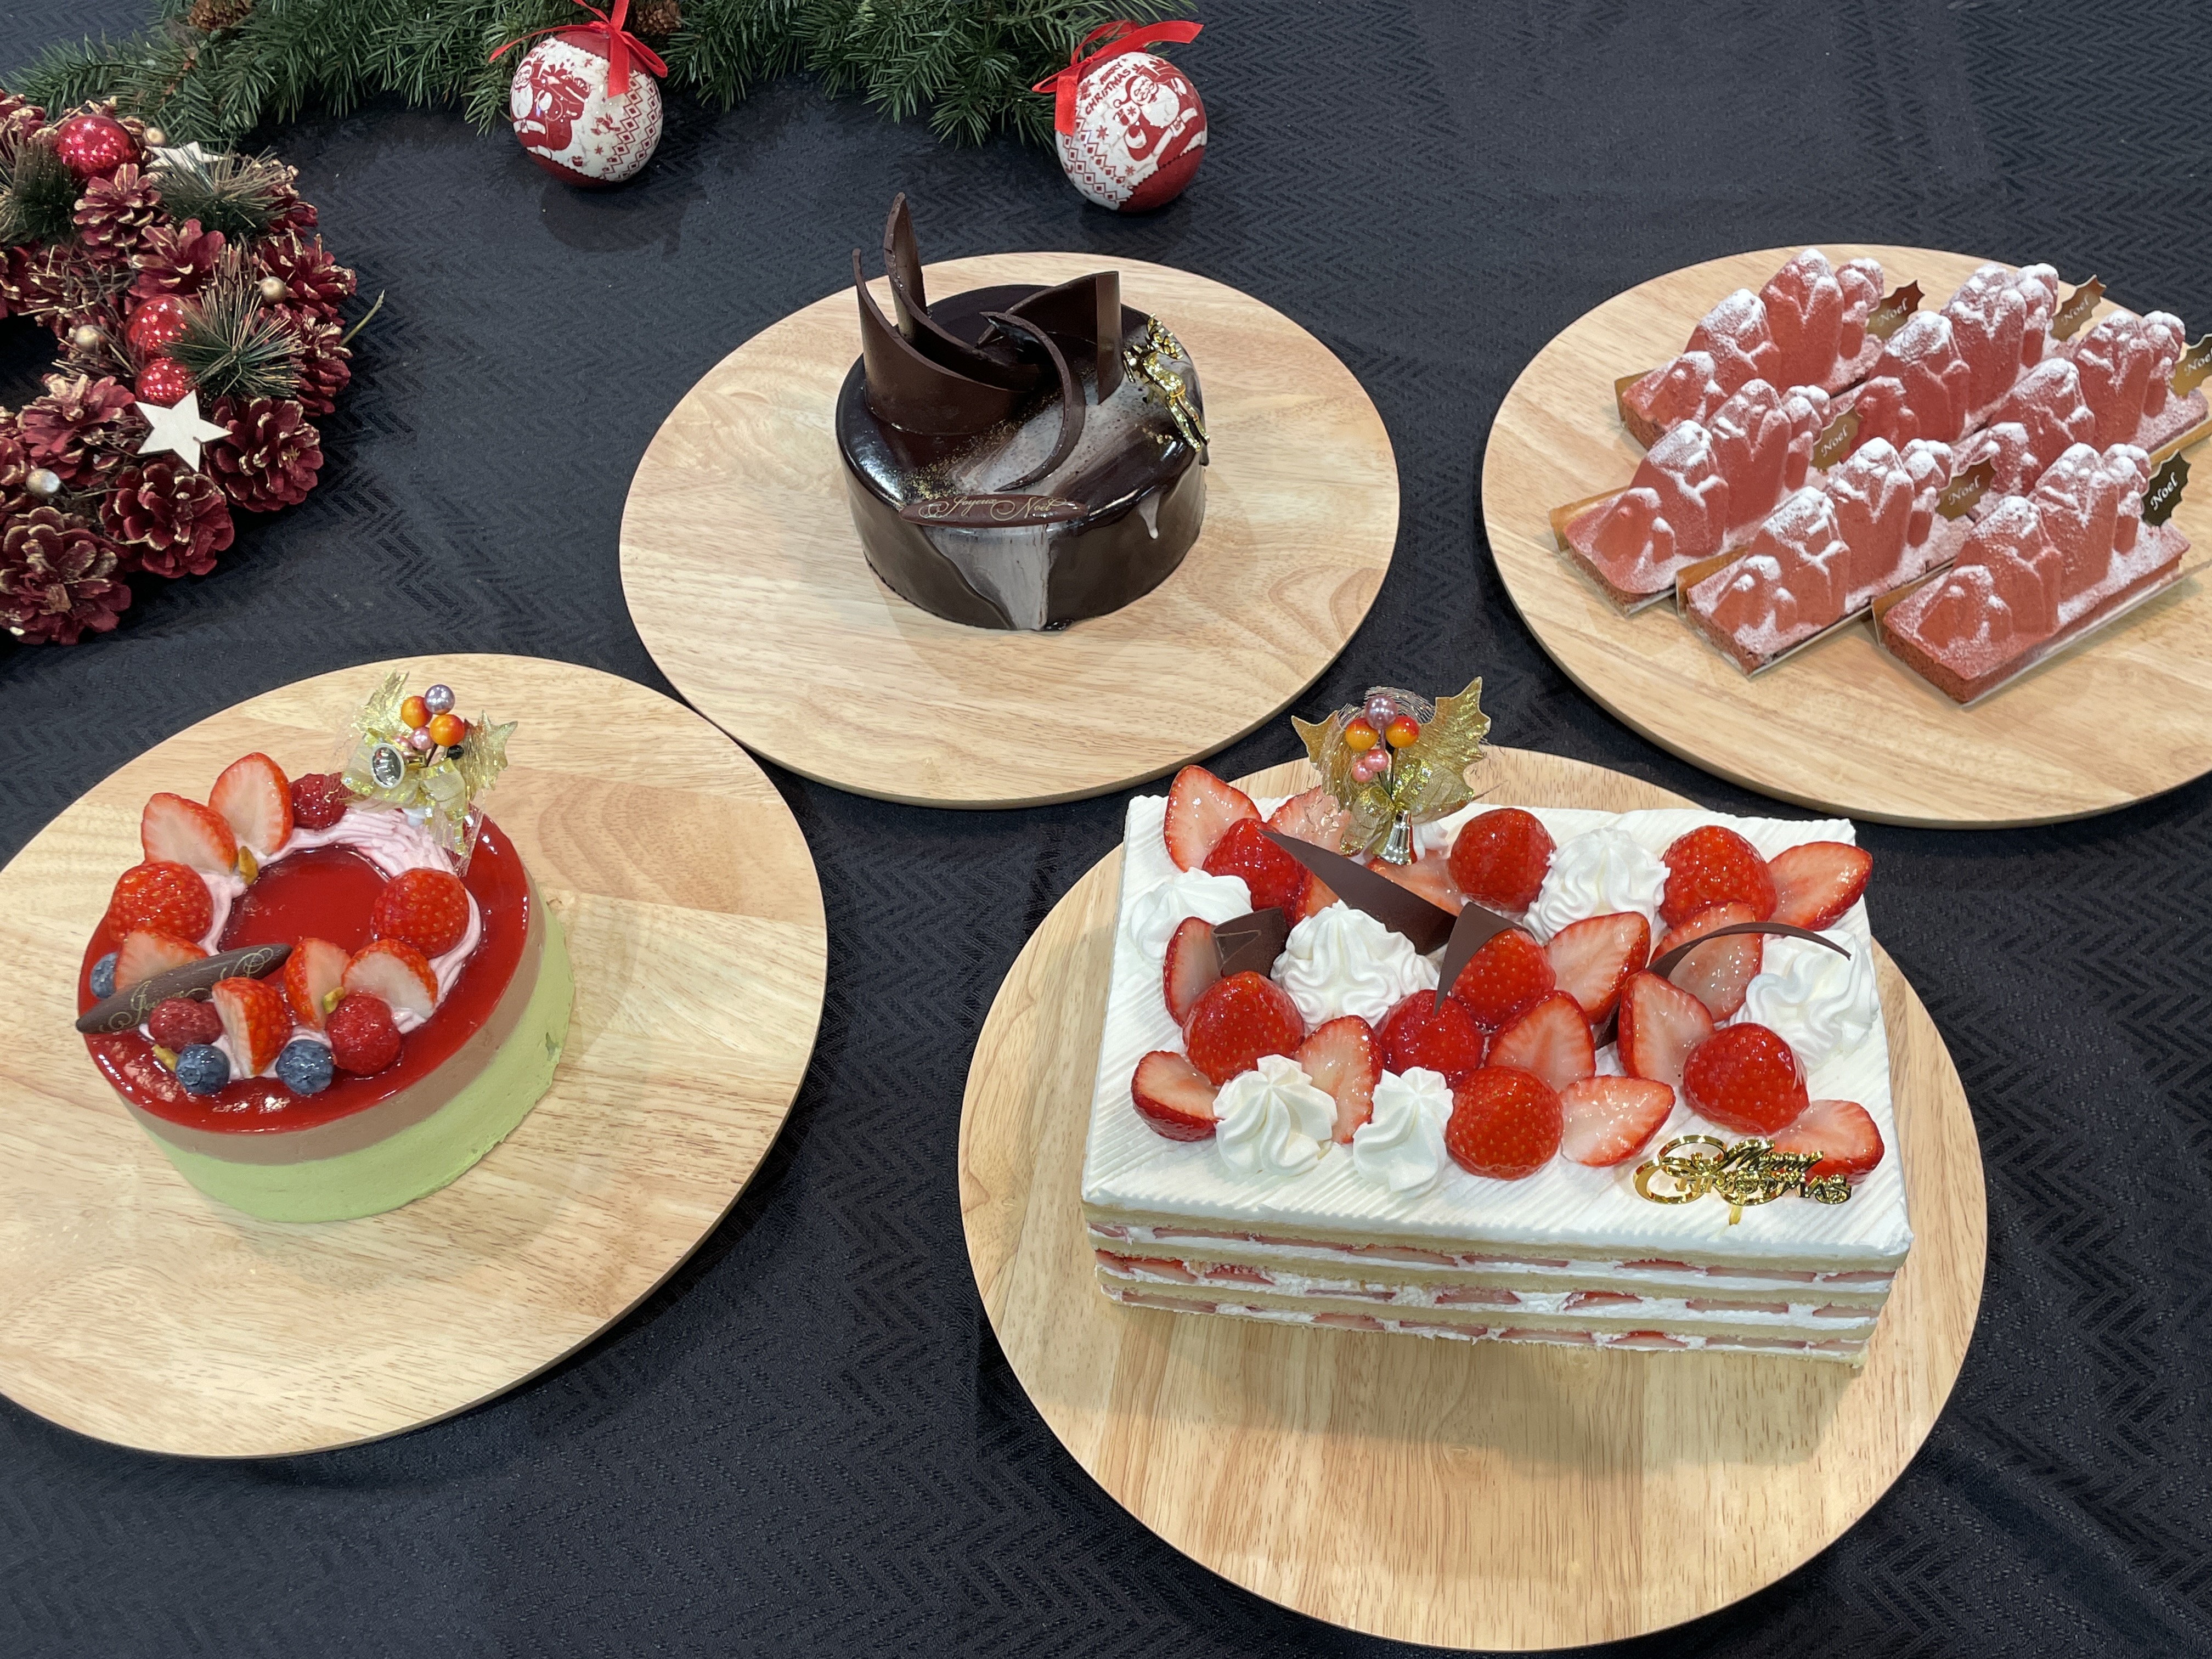 シャトレーゼ を愛するmartライターが21年クリスマスケーキ4種を実食レポ グルメ スポット Mart マート 公式サイト 光文社